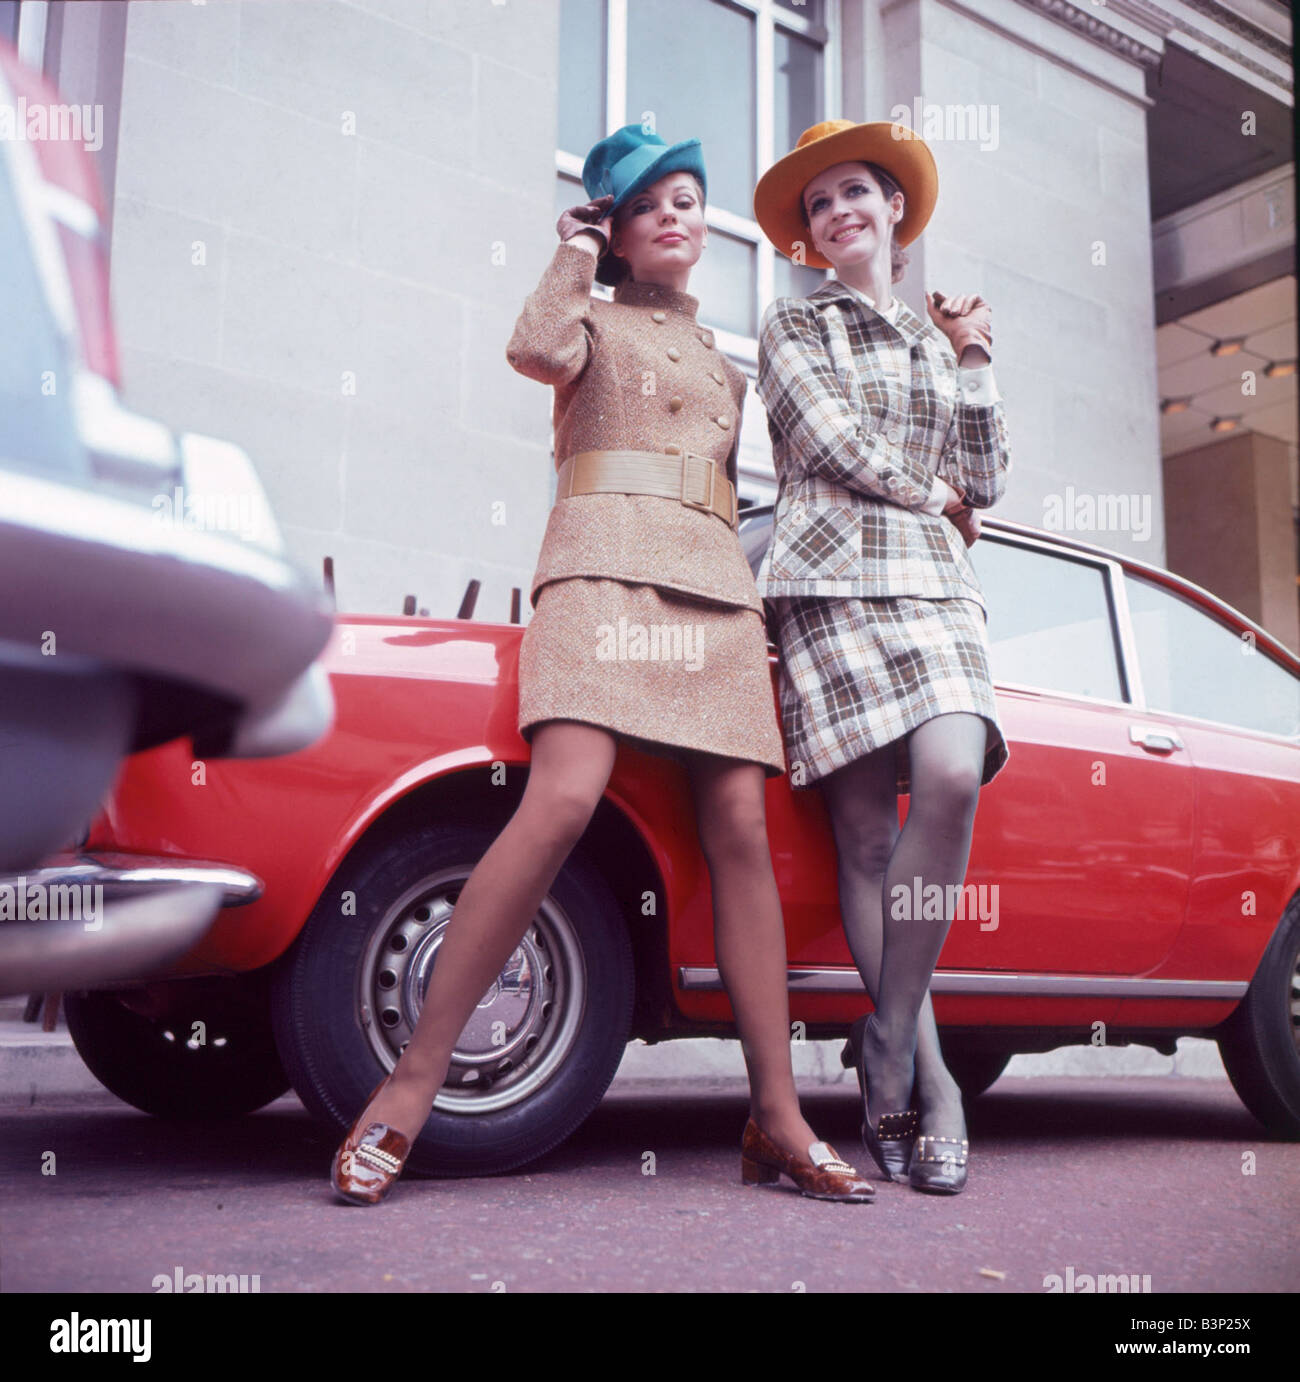 La mode des années 60 années 60 les vêtements des femmes avec chapeaux leaning on car Tweed fashions Mirrorpix Banque D'Images